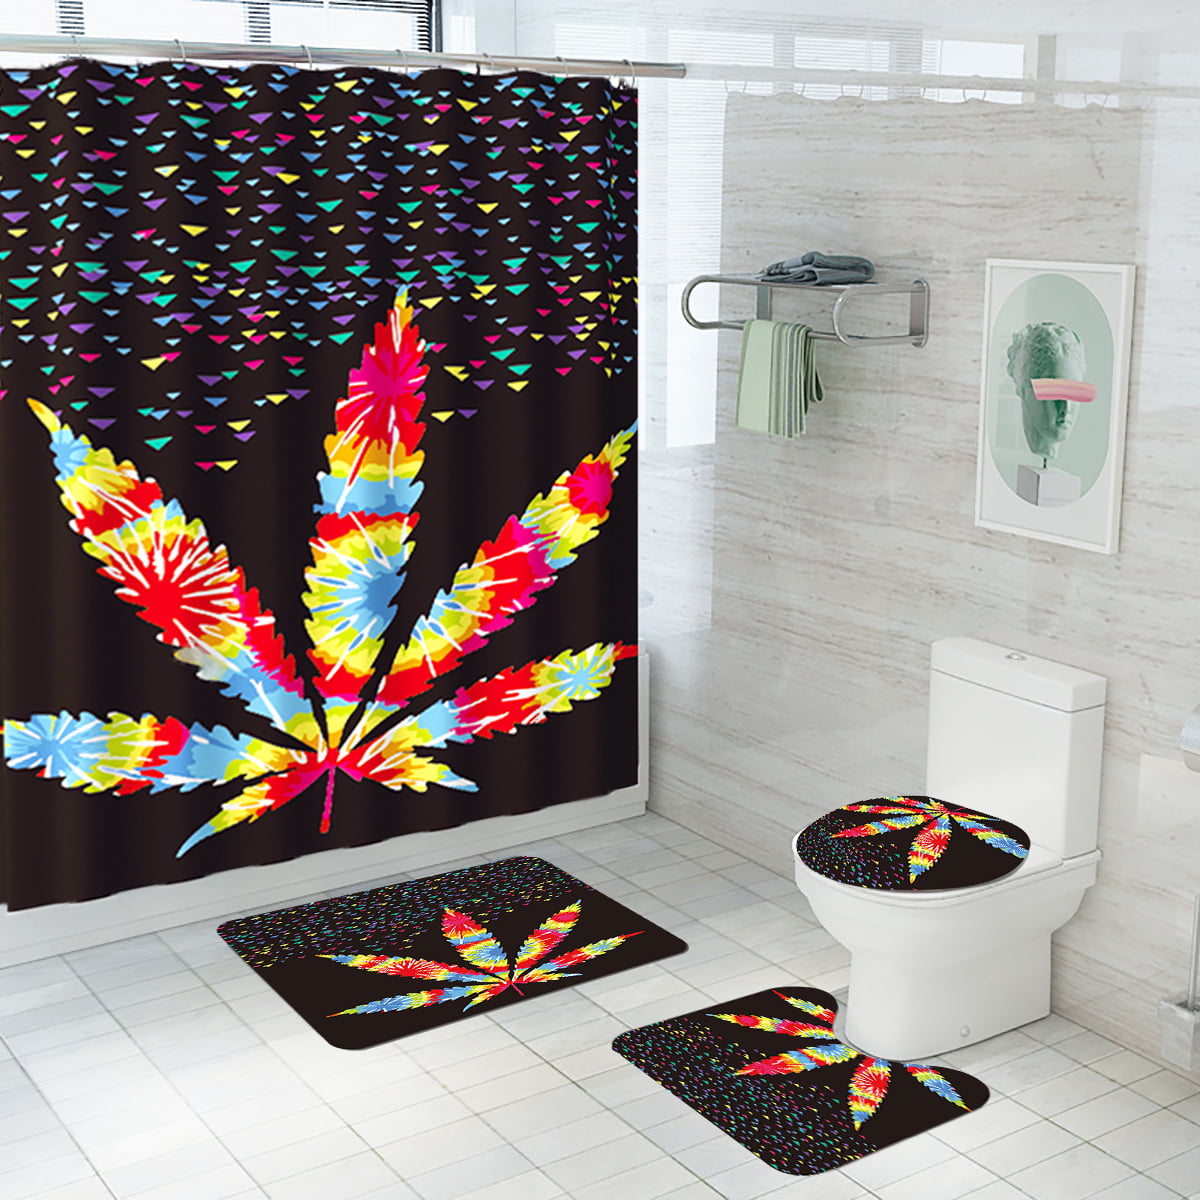 Details about   Bathroom Decor 3D Print 3PCS Rugs Set Lavatory Cover Non-Slip Bath Floor Mat Lid 